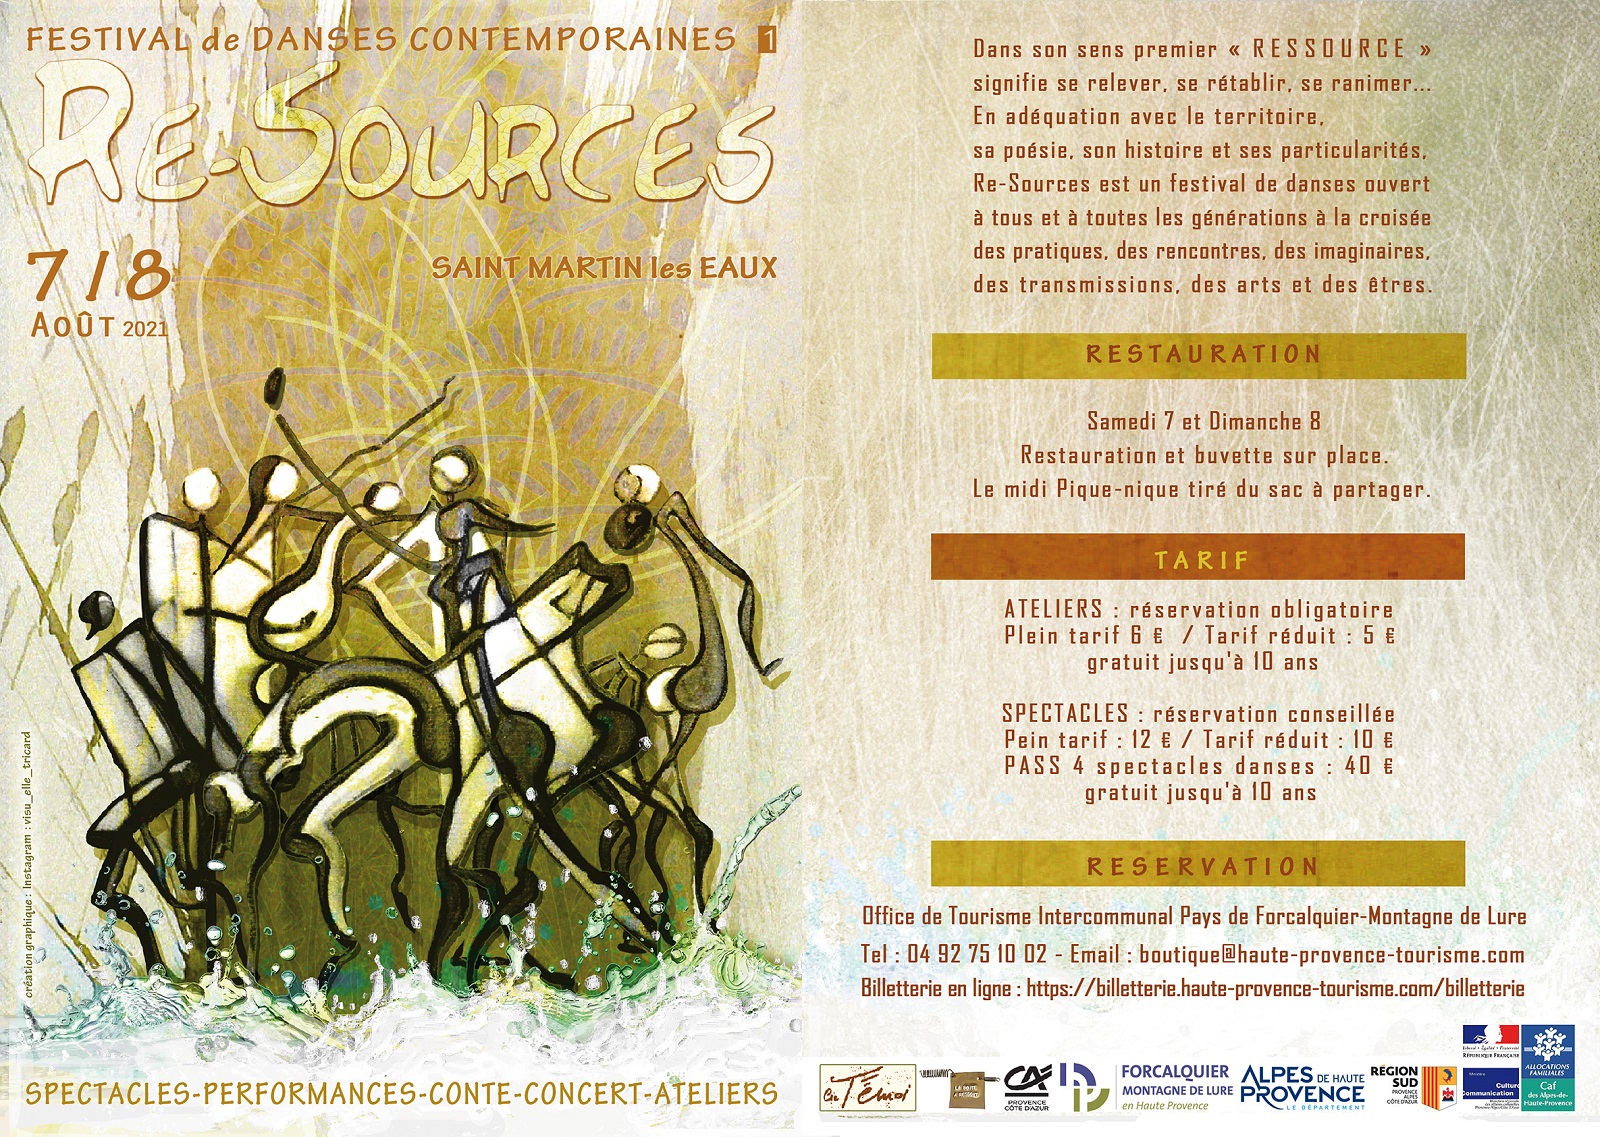 Re-Sources: un festival de Danses Contemporaines 